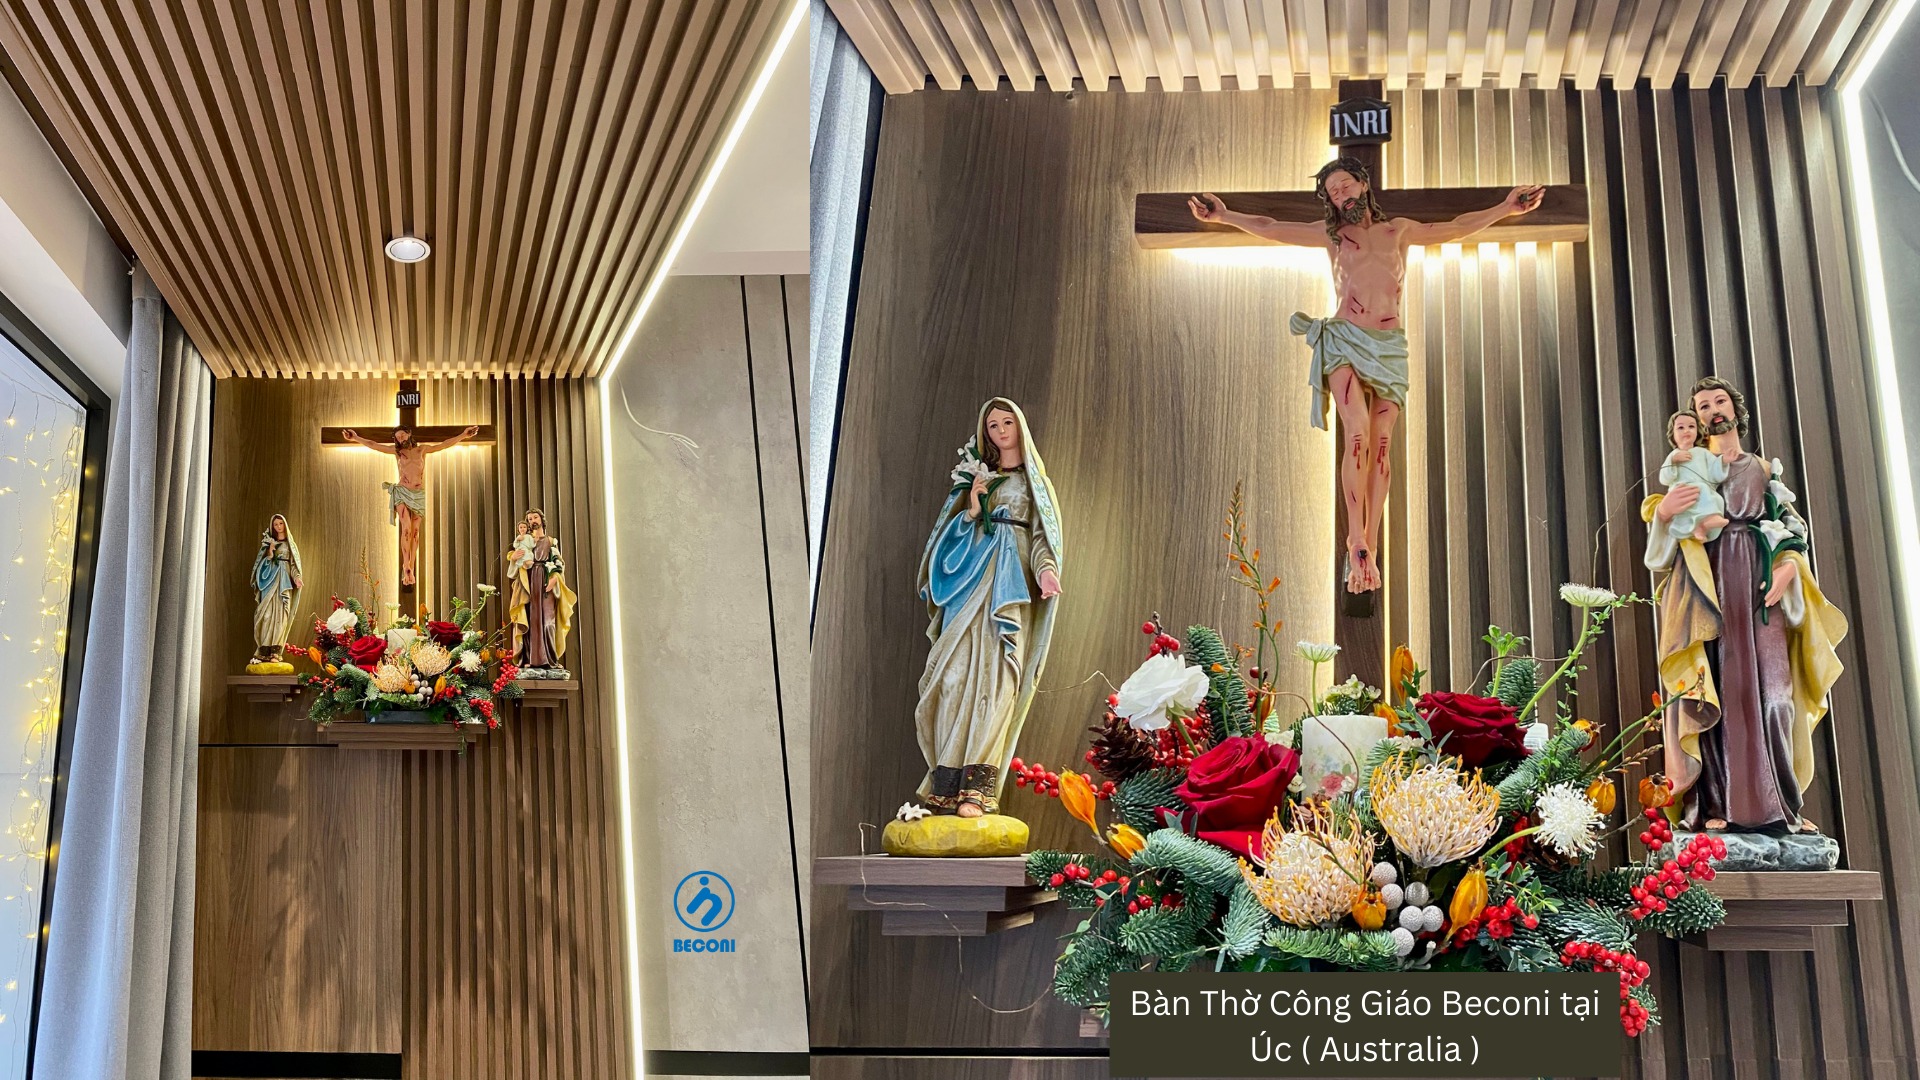 Bàn Thờ Chúa – Tượng Đức Mẹ – Tượng Chúa tại Đài Loan